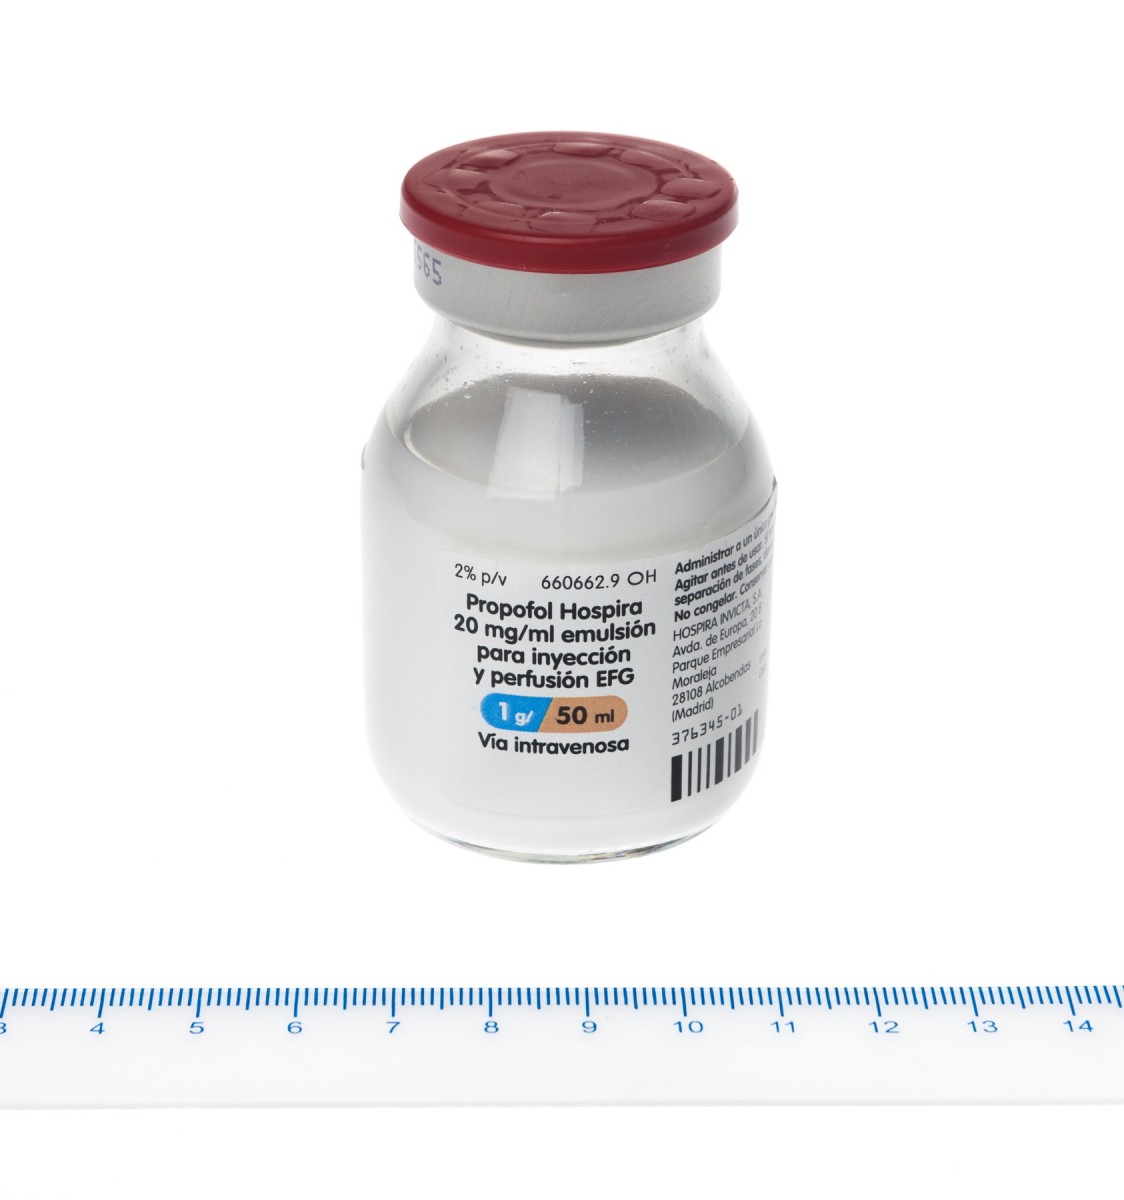 PROPOFOL HOSPIRA 20 mg/ml EMULSION PARA INYECCION Y PERFUSION EFG, 1 vial de 50 ml fotografía de la forma farmacéutica.